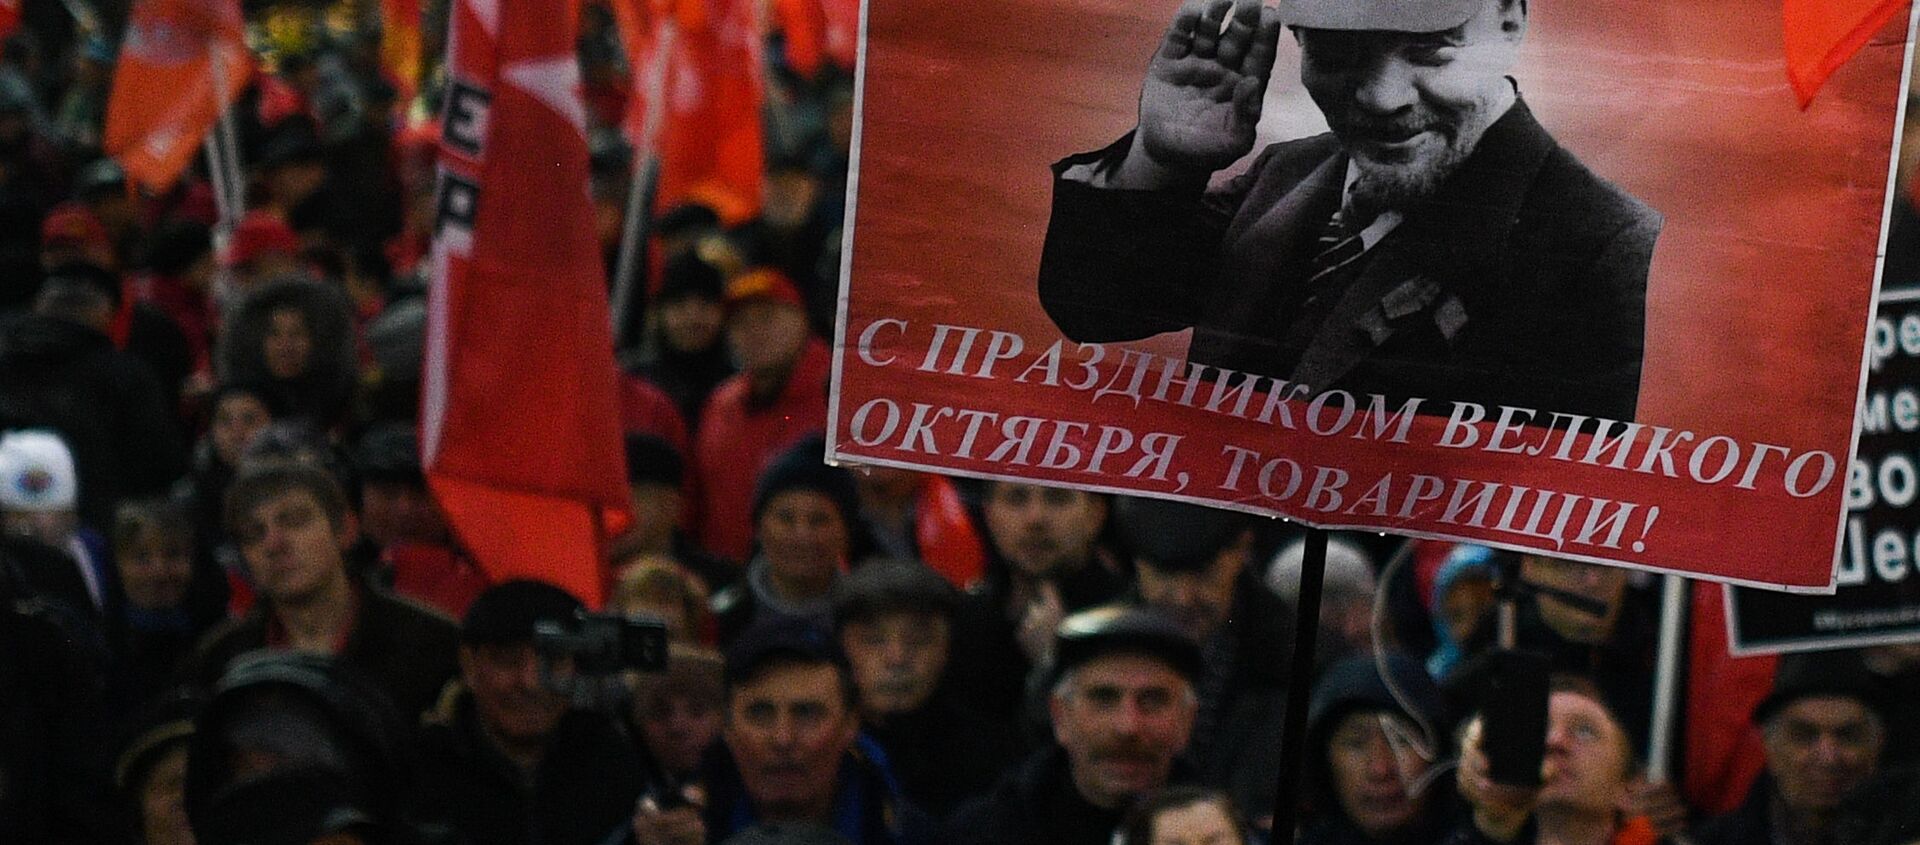 Участники шествия, годовщине Великой Октябрьской социалистической революции в Москве - Sputnik Южная Осетия, 1920, 07.11.2019